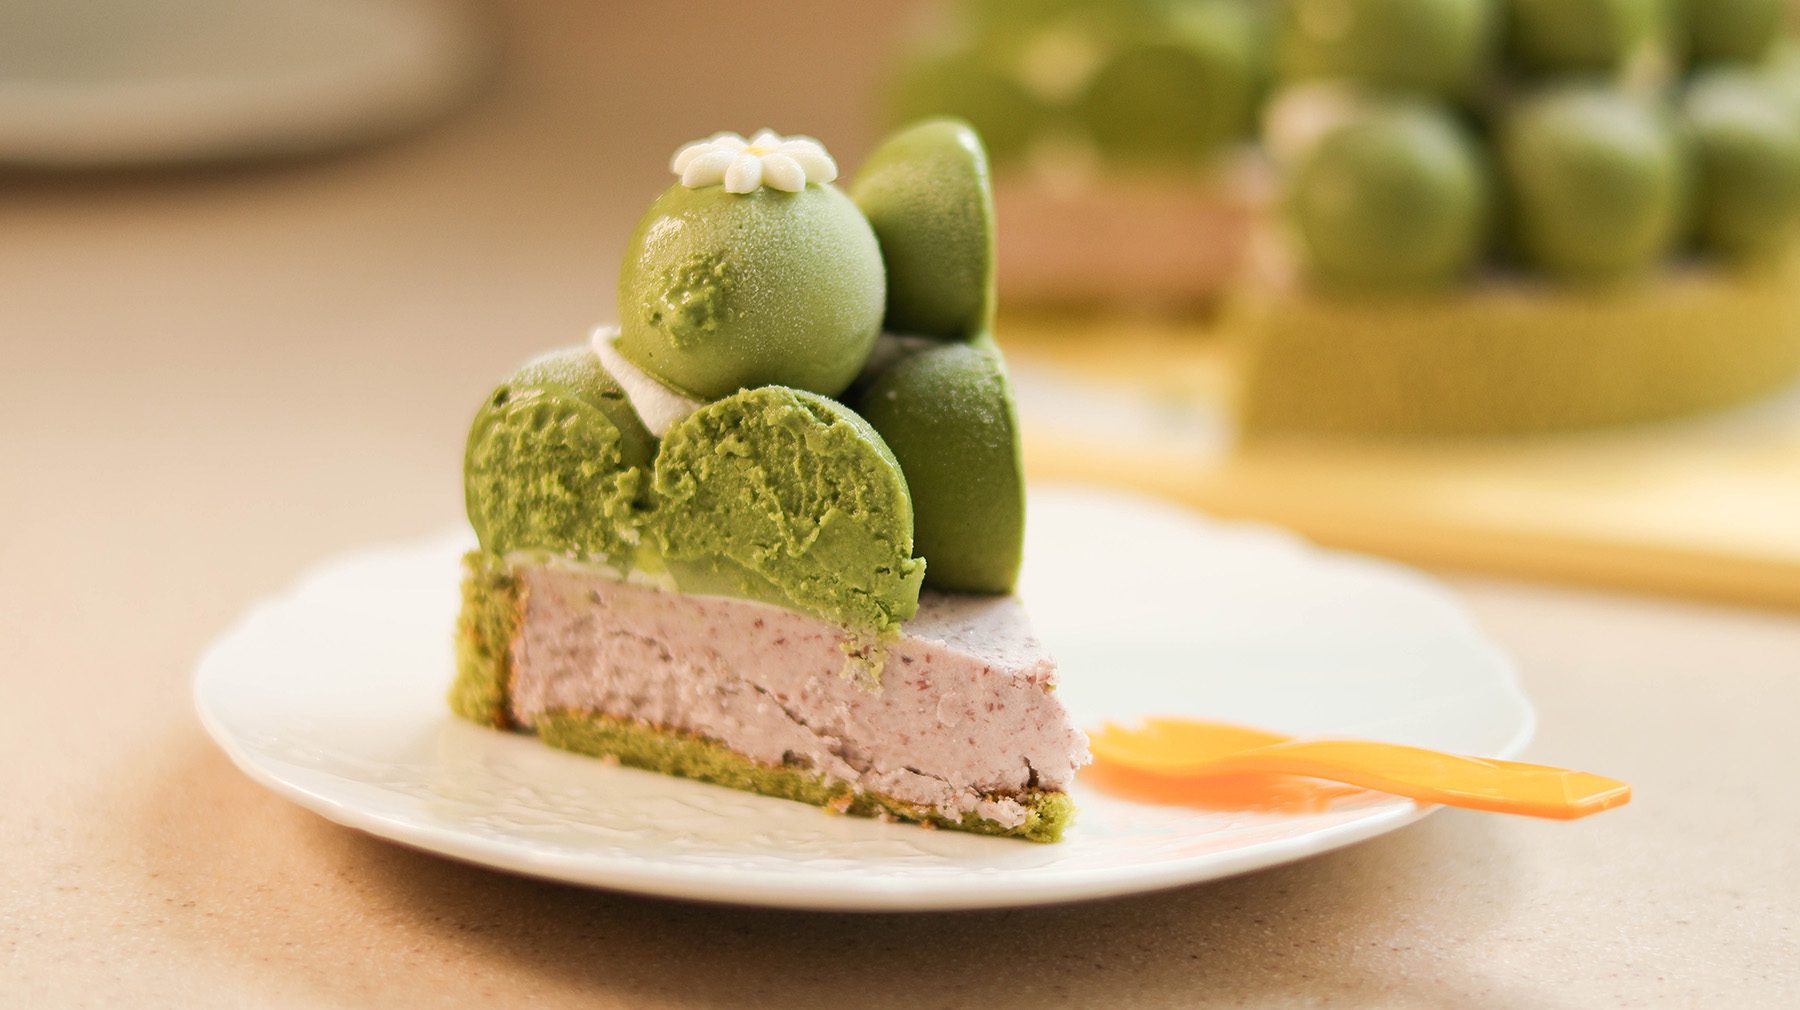 卡瓦蛋糕-卡瓦抹茶冰淇淋蛋糕／抹茶季、清爽無負擔的台北義式冰淇淋蛋糕推薦 @Rosa的秘密花園